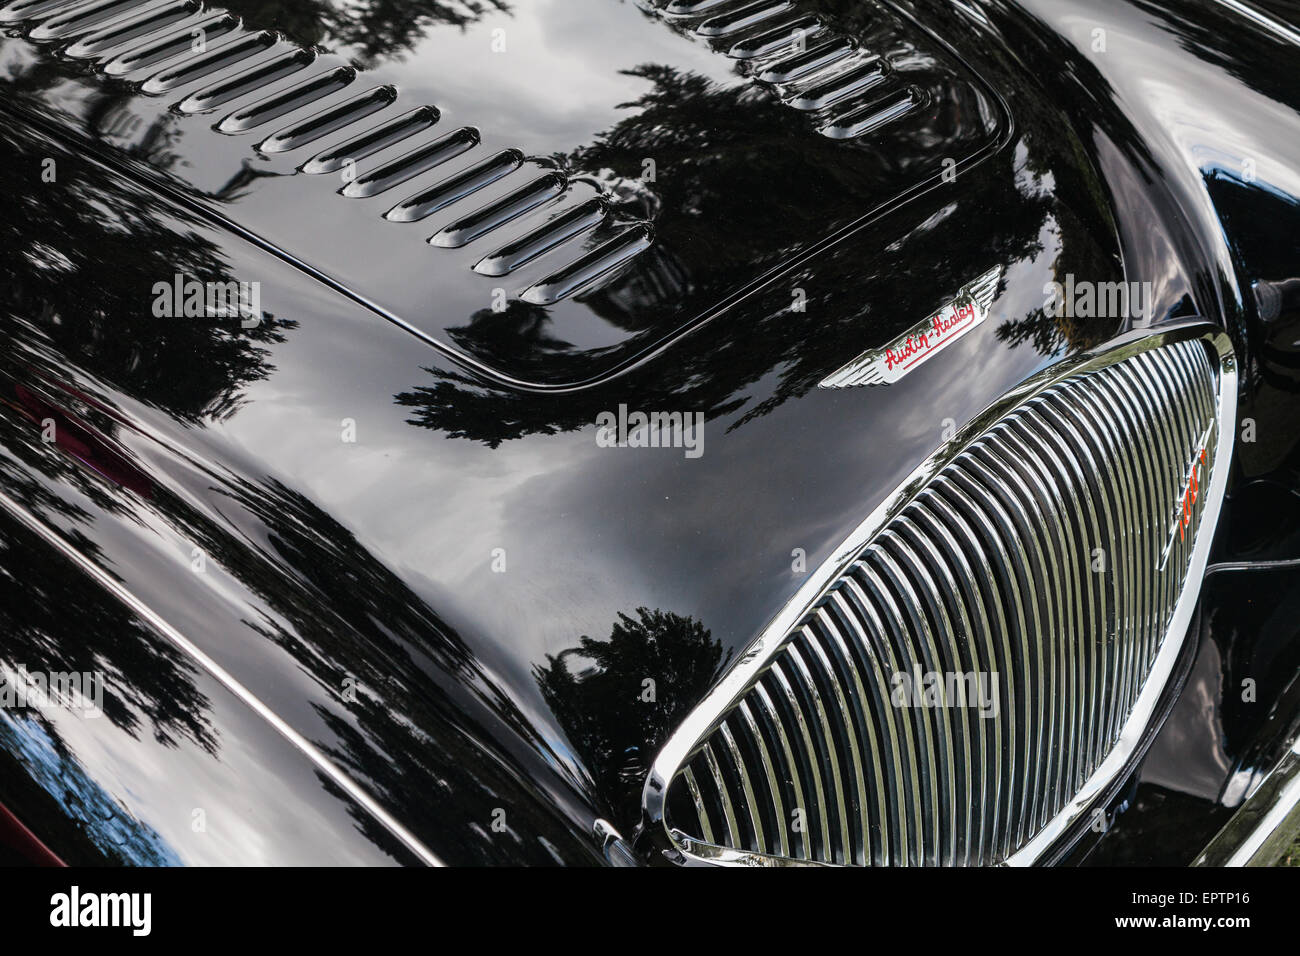 Dettaglio della parte anteriore di una Austin Healey 100 British Auto sportiva Foto Stock